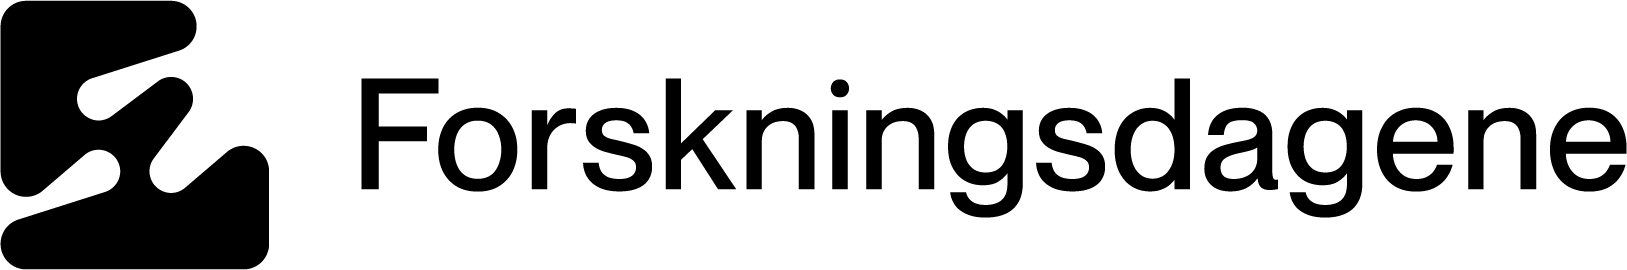 Forskningsdagene netttbutikk logo